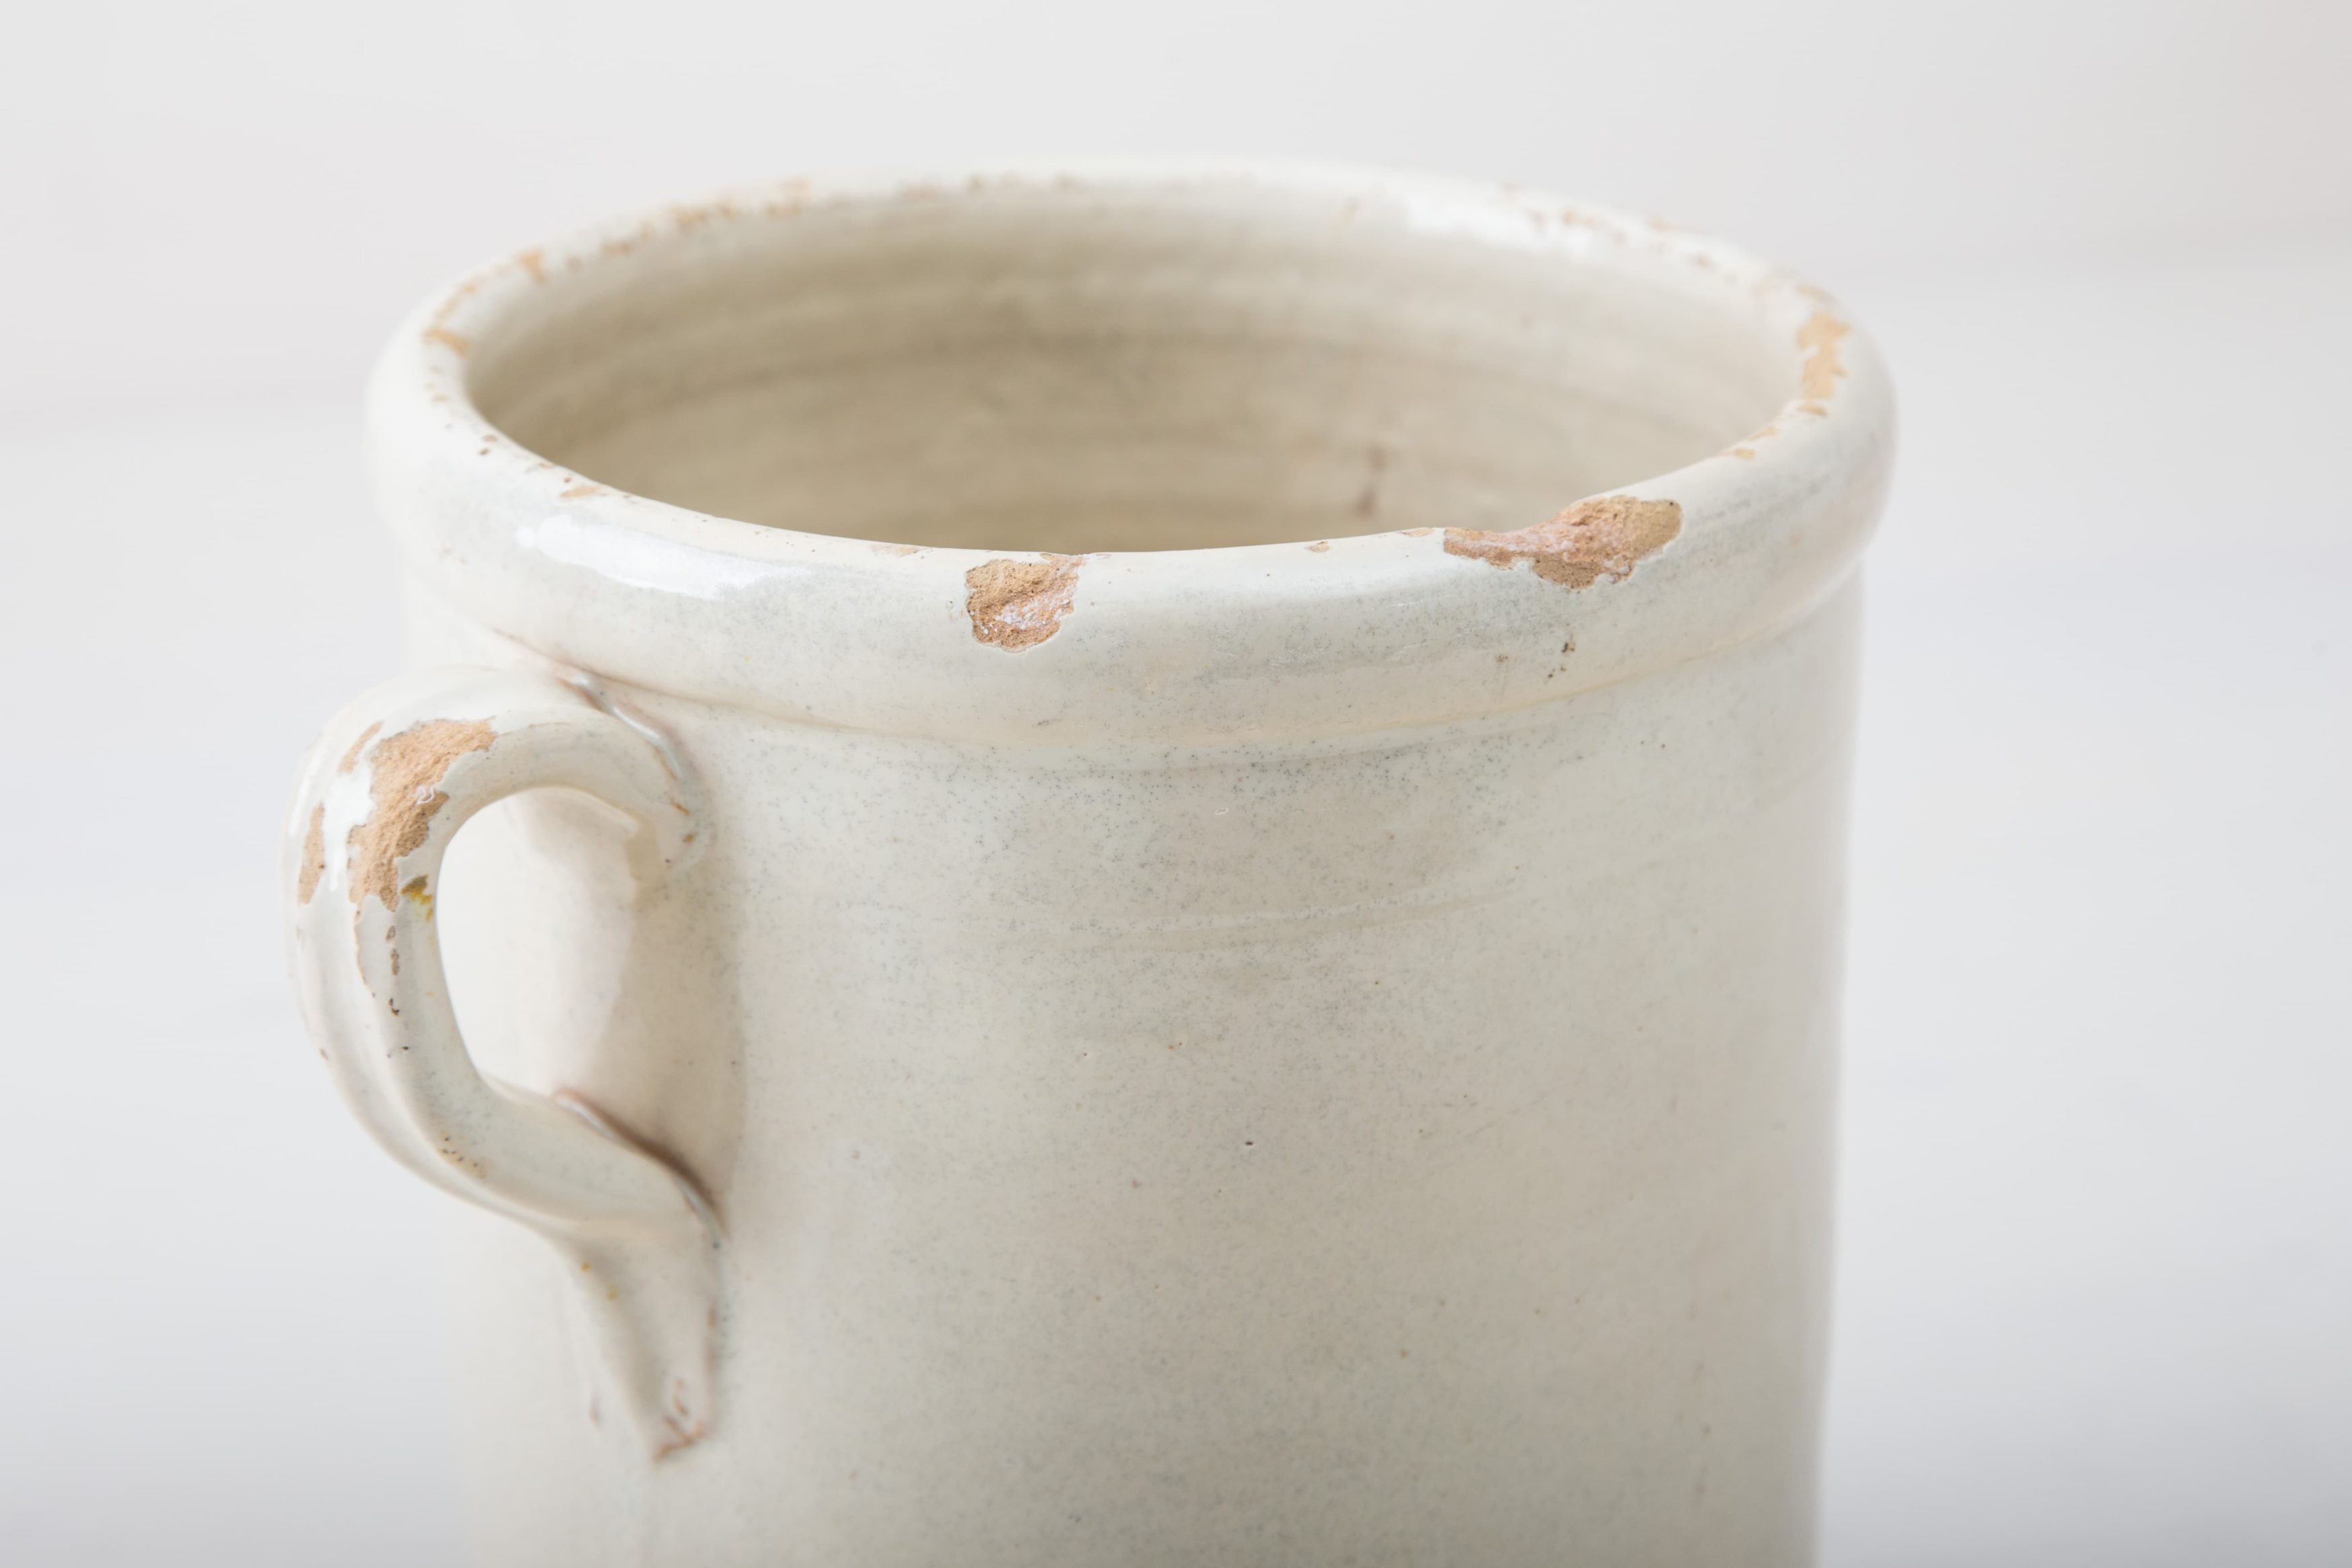 Diese elfenbeinfarbenen Vase der Serie Humaita ist, mit ihrer zinnhaltigen Glasur, etwas ganz besonderes unter den rustikalen Gefäßen. Mehrere Vasen verwendet, geben sie ein harmonisches Bild ab und sehen zu Herbst wie Sommerevents gleichermaßen gut aus. Ob als Vase für einen tollen Herbst- oder Kornblumenstrauß oder aber als Süßigkeitendose auf dem Buffettisch– Vase Humaita ist abwechslungsreich und hat eine schöne Patina. Robba bianca, Monochrome elfenbeinfarbene Glasur ist in Süditalien sehr beliebt. Die alten zylindrischen Vorratsgefässe stammen aus den 1920er Jahren und es wurden darin Gemüse in Öl und Essig gelagert. Nun gut gereinigt kannst Du die Gefäße als Vase für Dein Eventstyling oder Hochzeitsdekoration einsetzen.